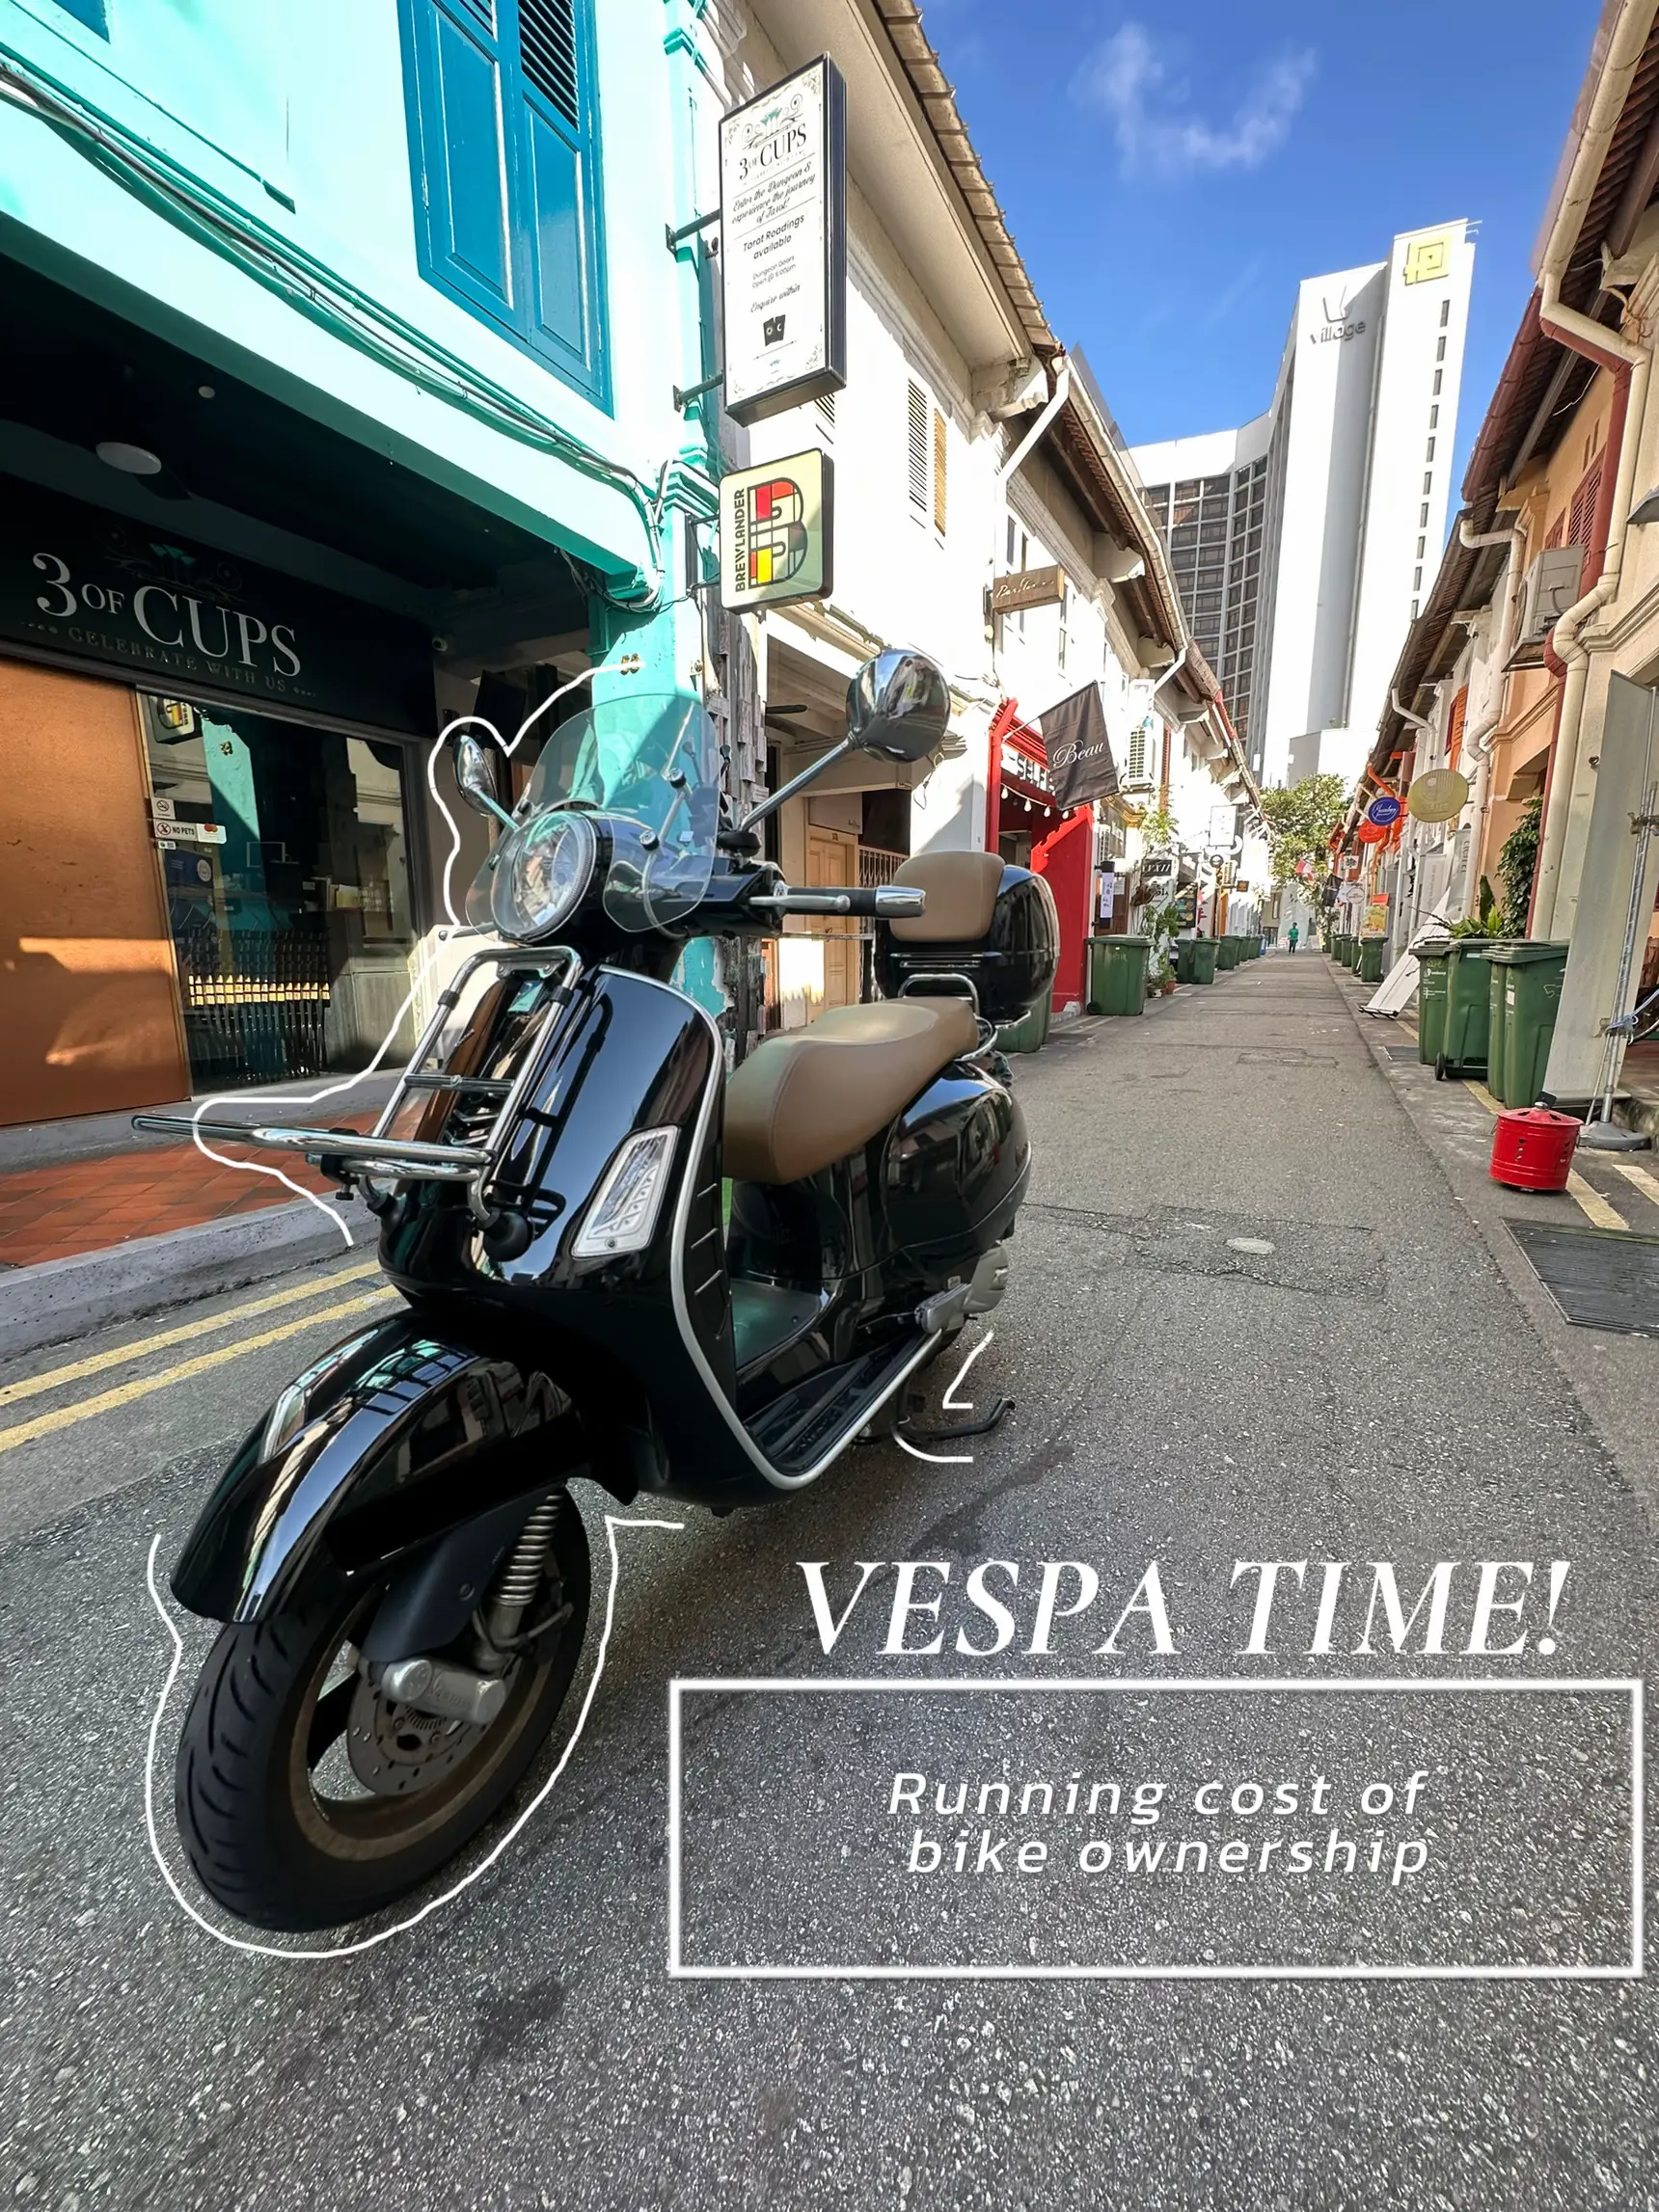 Vespa Repair Costs - Lemon8 Search